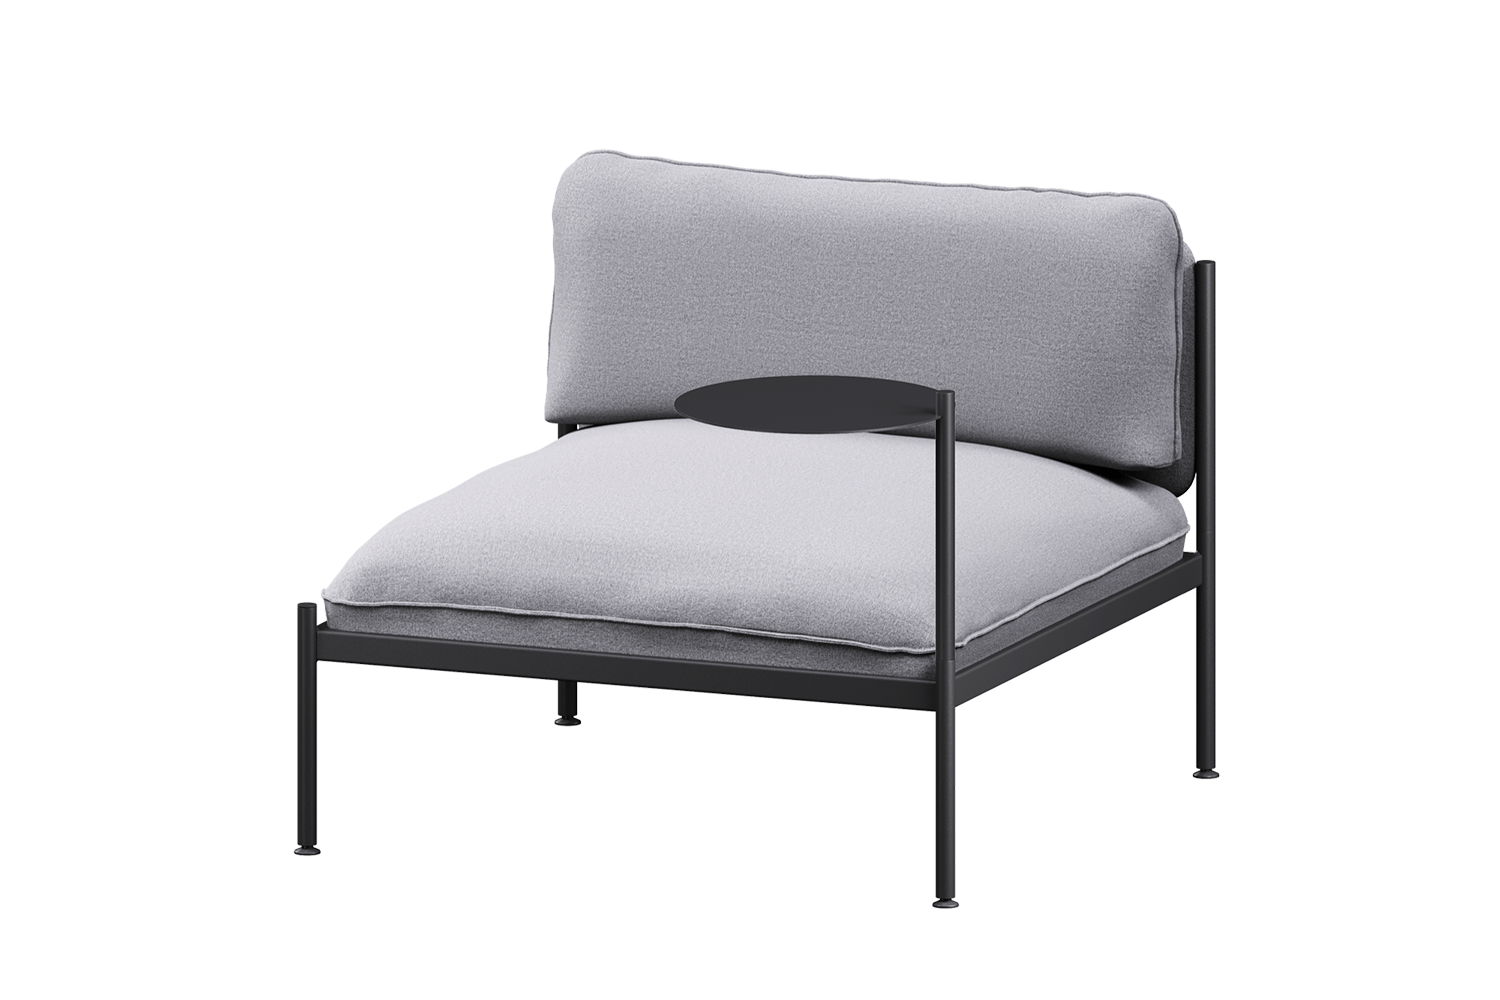 Toom Modular Stuhl in Pale Grey  präsentiert im Onlineshop von KAQTU Design AG. Sessel ist von Noo.ma